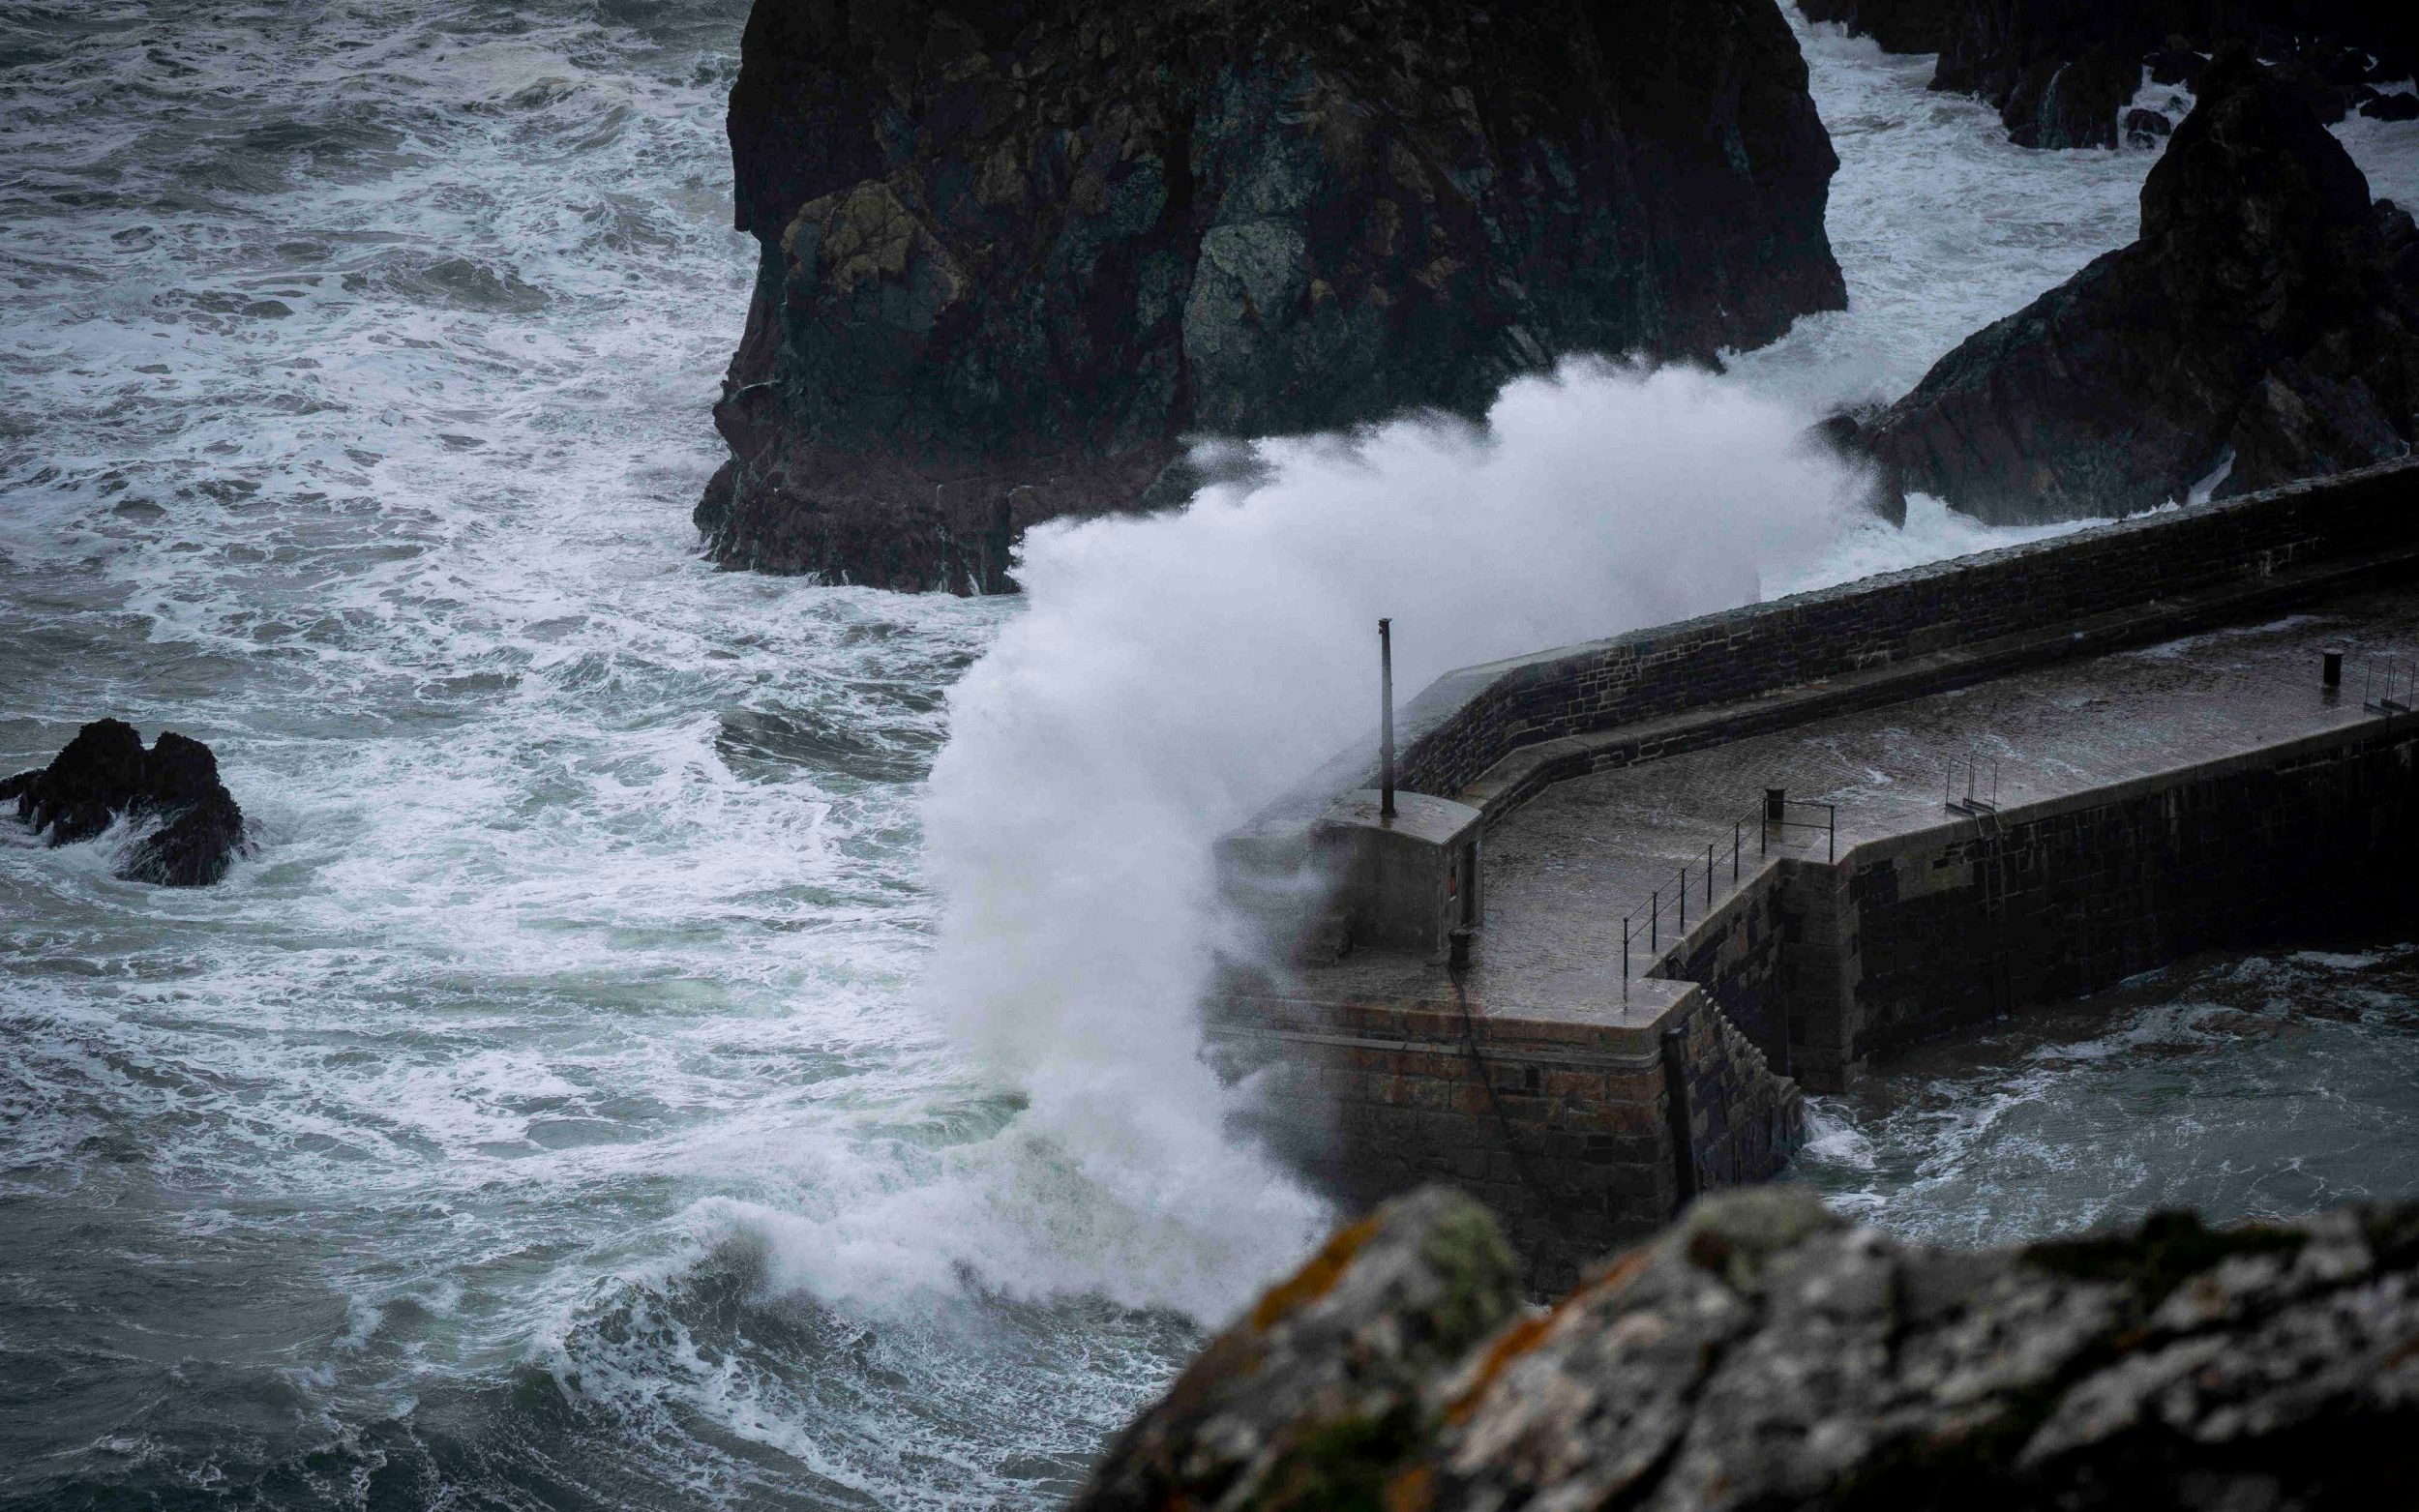 Cornwall earthquake felt like a juggernaut hitting a house, say residents